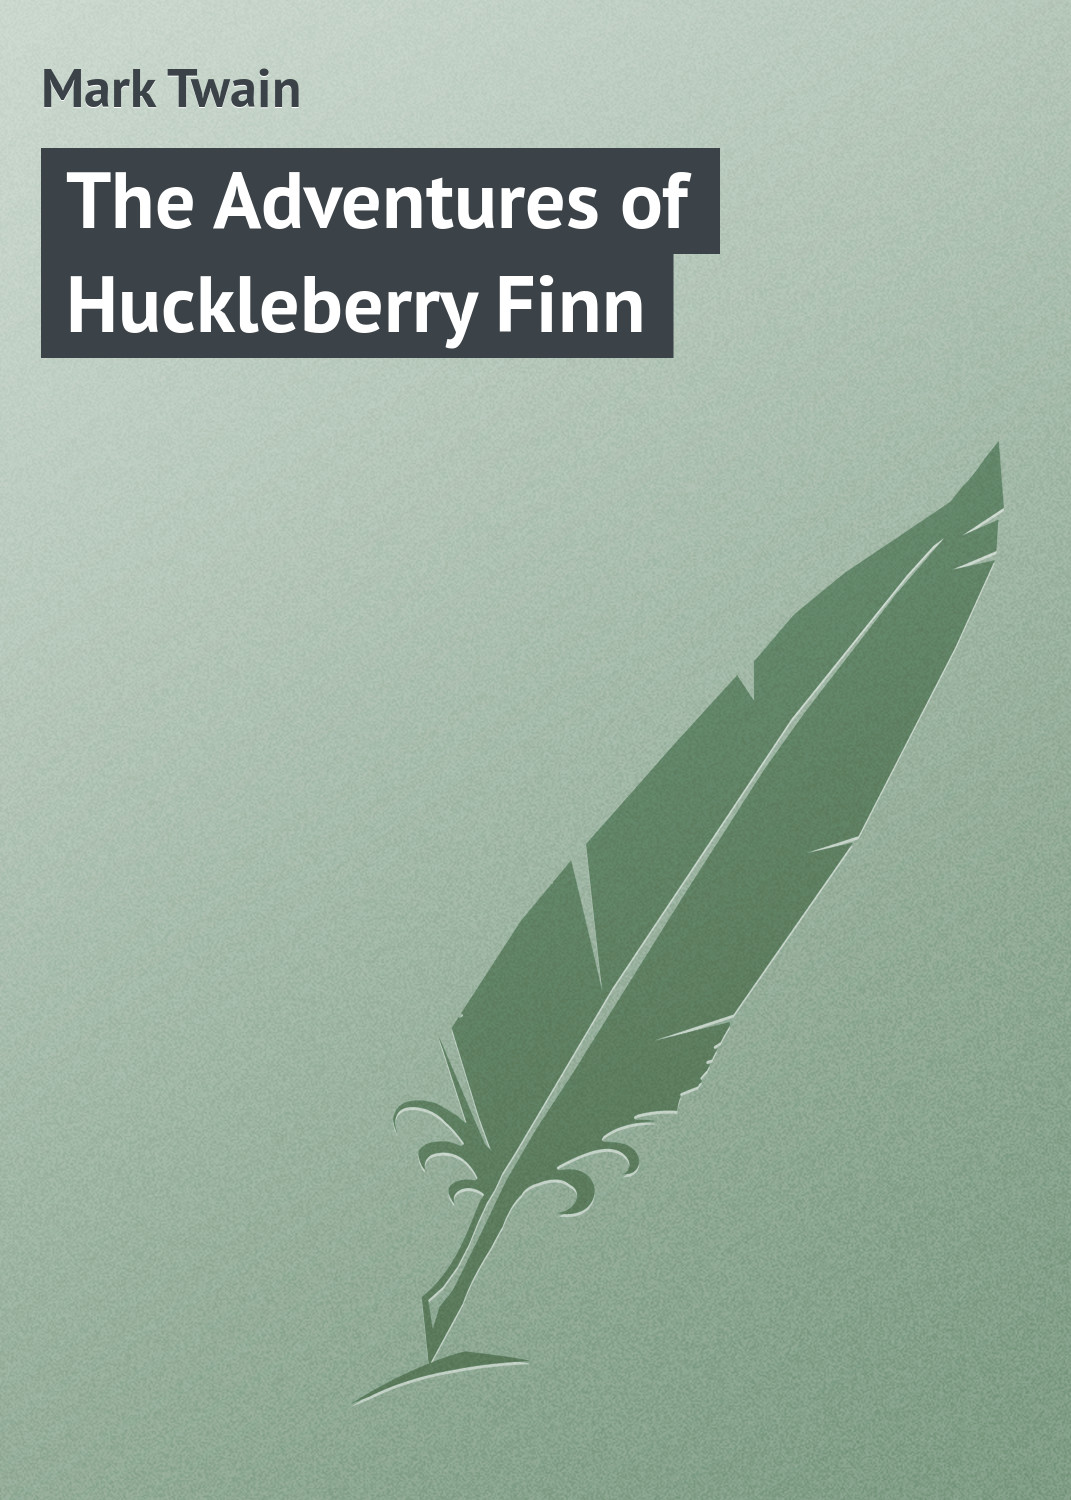 Книга The Adventures of Huckleberry Finn из серии , созданная Mark Twain, может относится к жанру Иностранные языки, Зарубежная классика, Зарубежные детские книги, Детские приключения, Детская проза. Стоимость электронной книги The Adventures of Huckleberry Finn с идентификатором 22812194 составляет 5.99 руб.